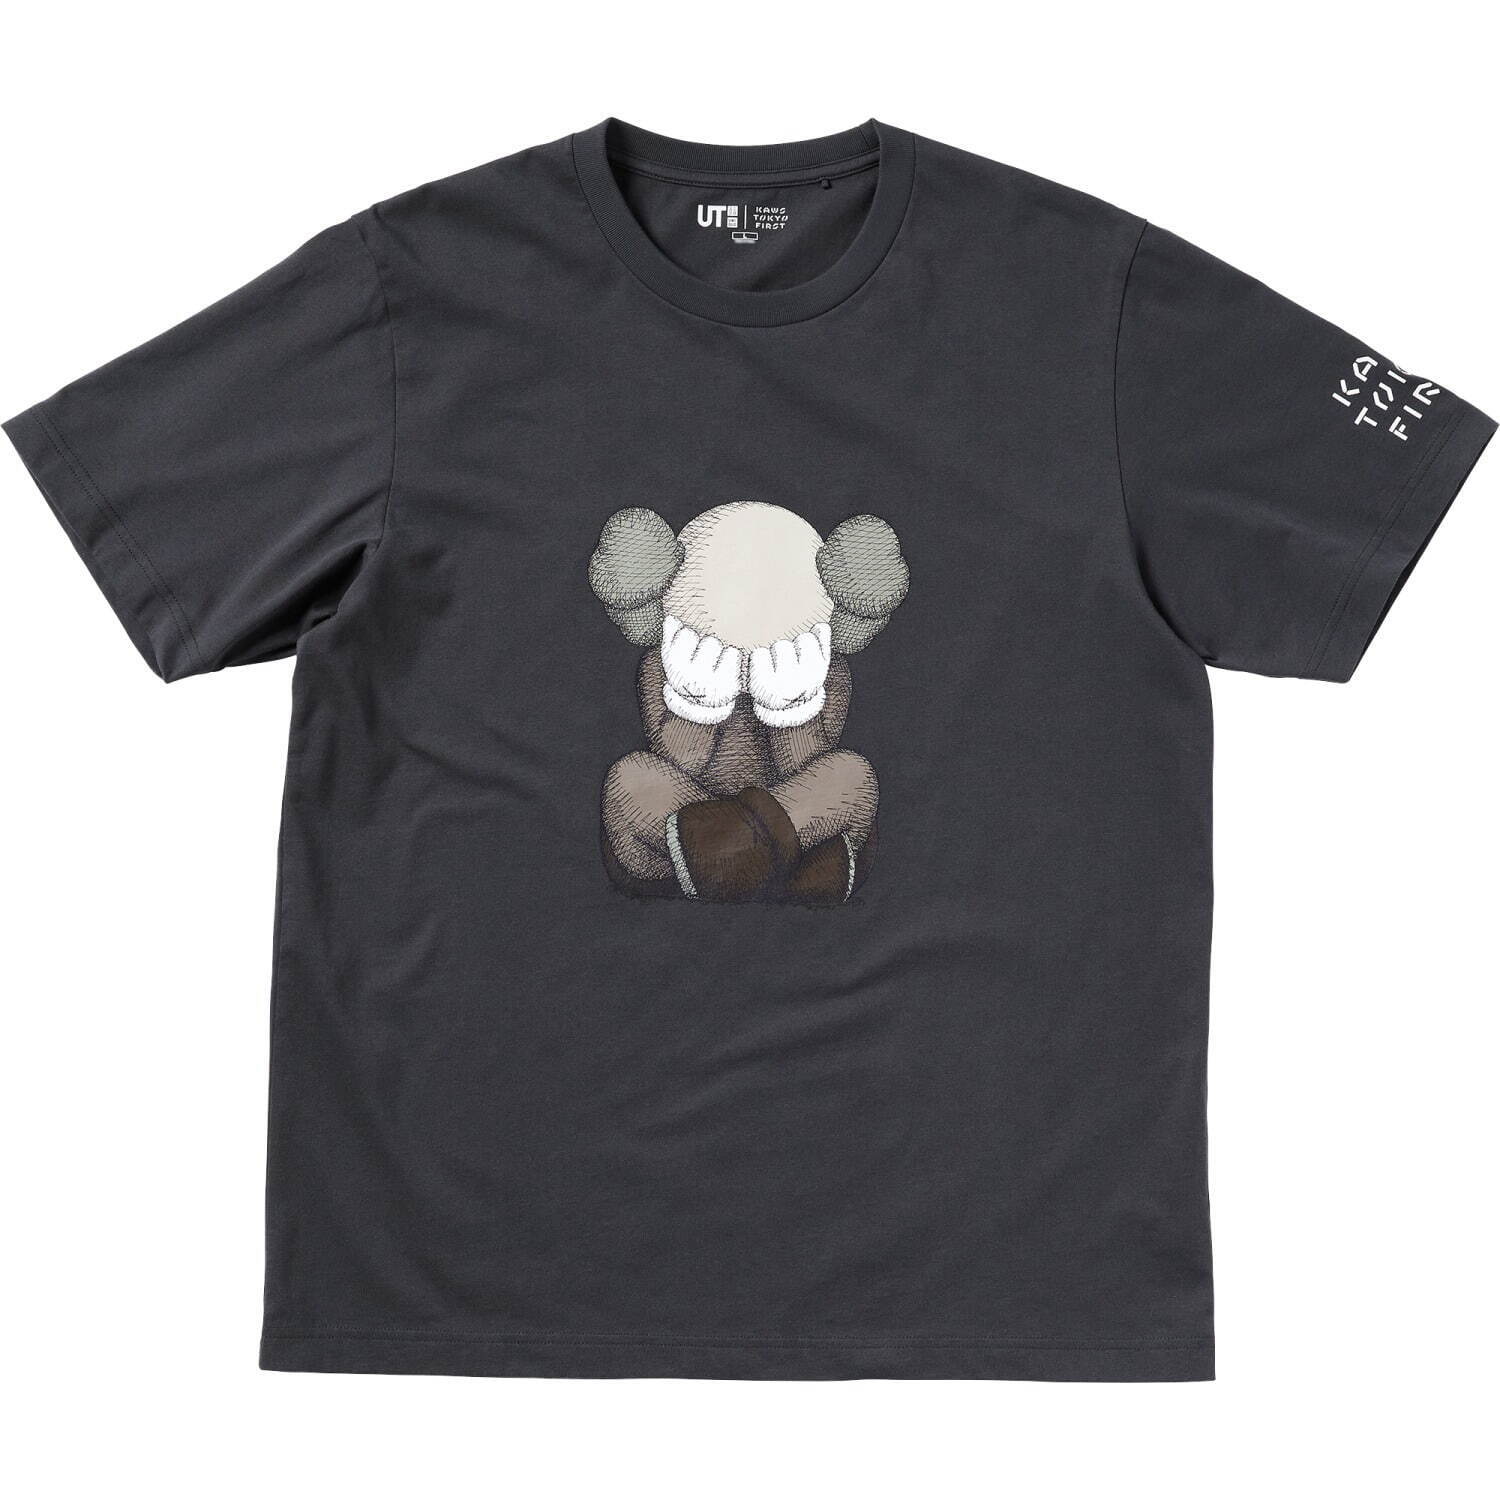 「KAWS UT」メンズ Tシャツ 1,500円
© KAWS